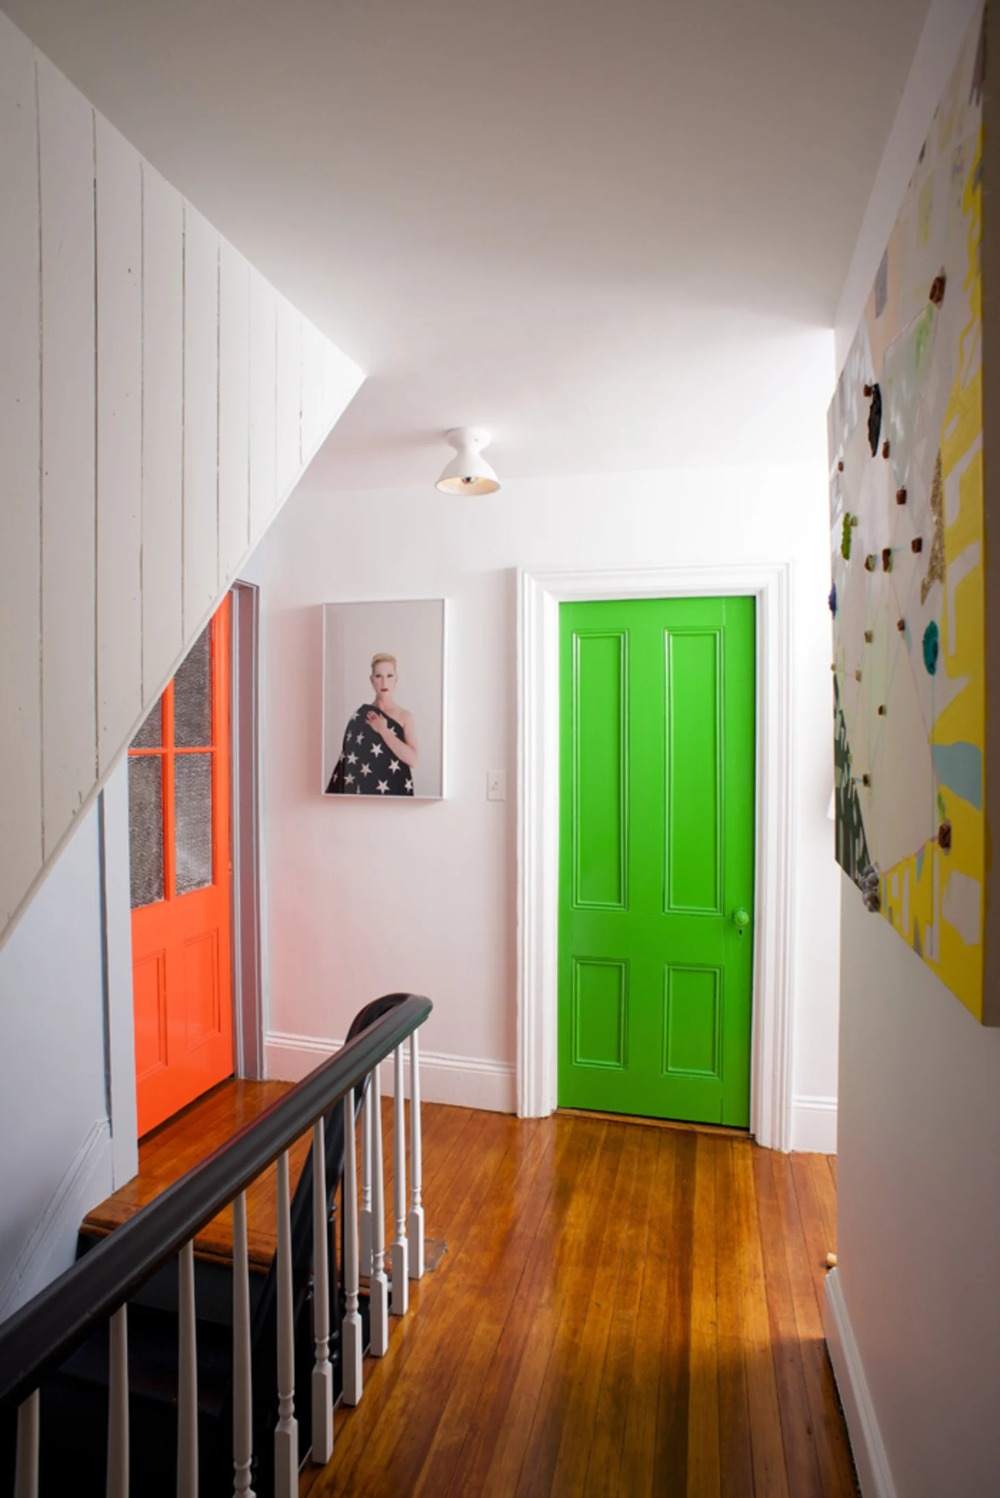 welche farbe grün und orange für innentüren im flur passend wählen